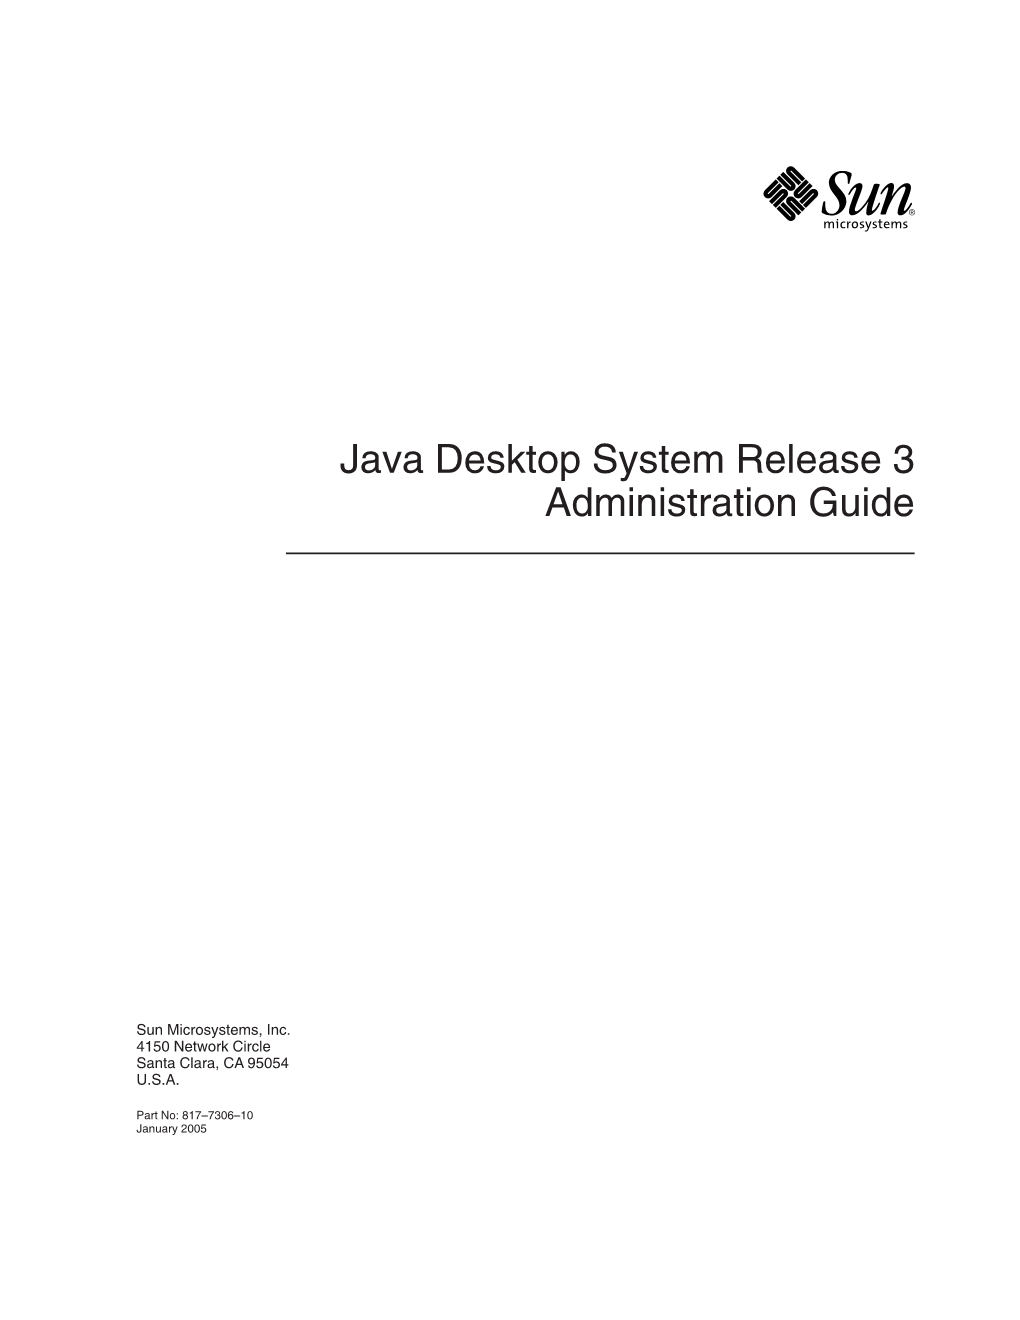 Java Desktop System Release 3 Administration Guide